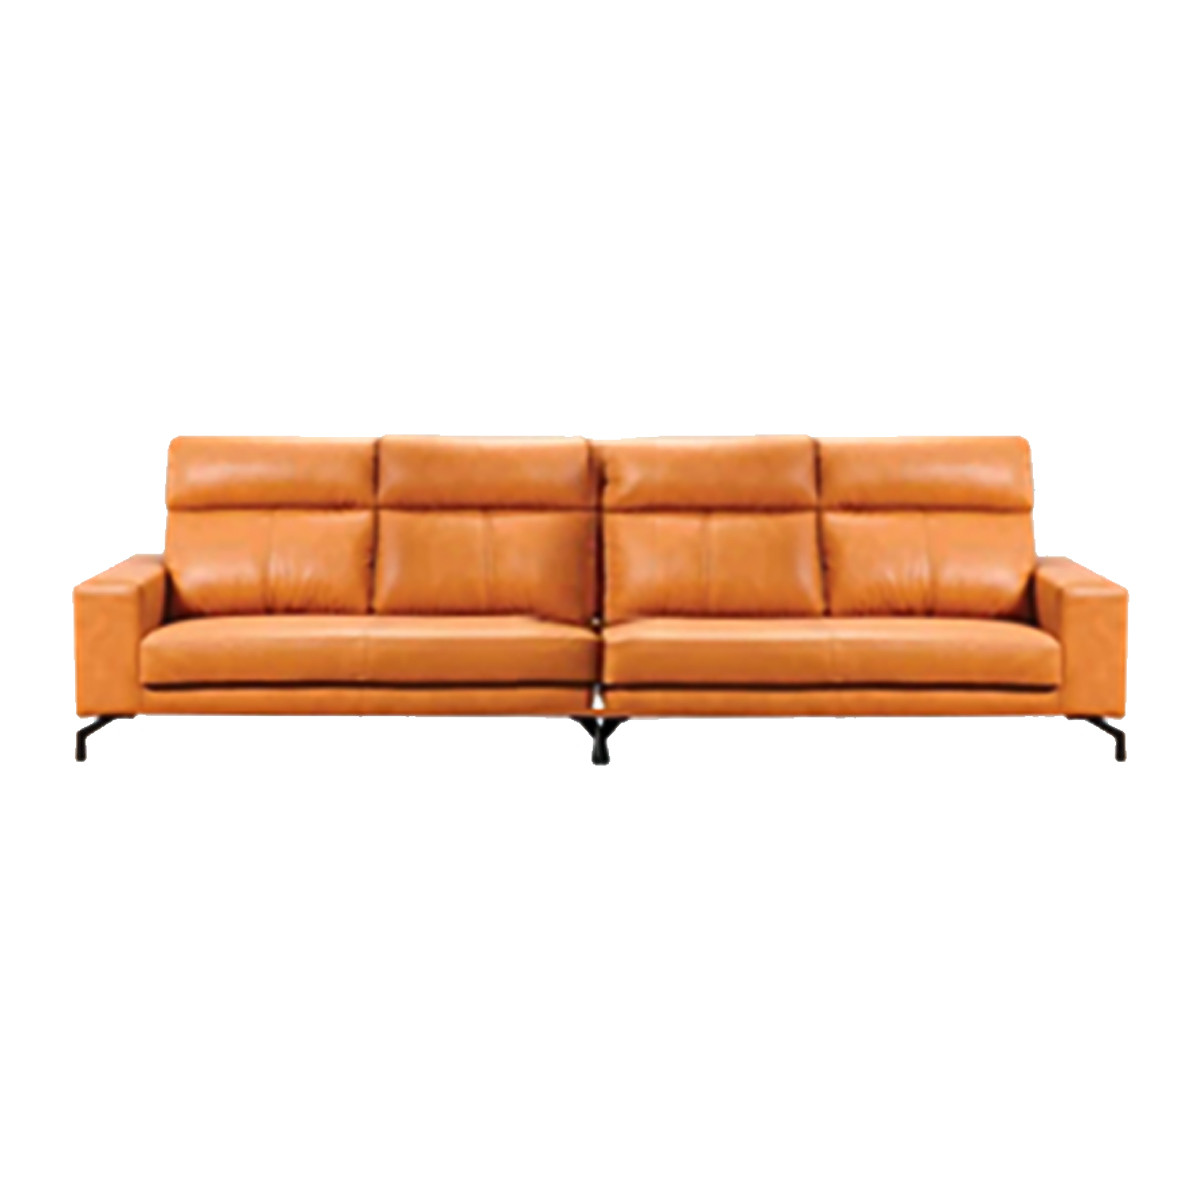 Itano 4 Seater Sofa 10ft Moredesign Com